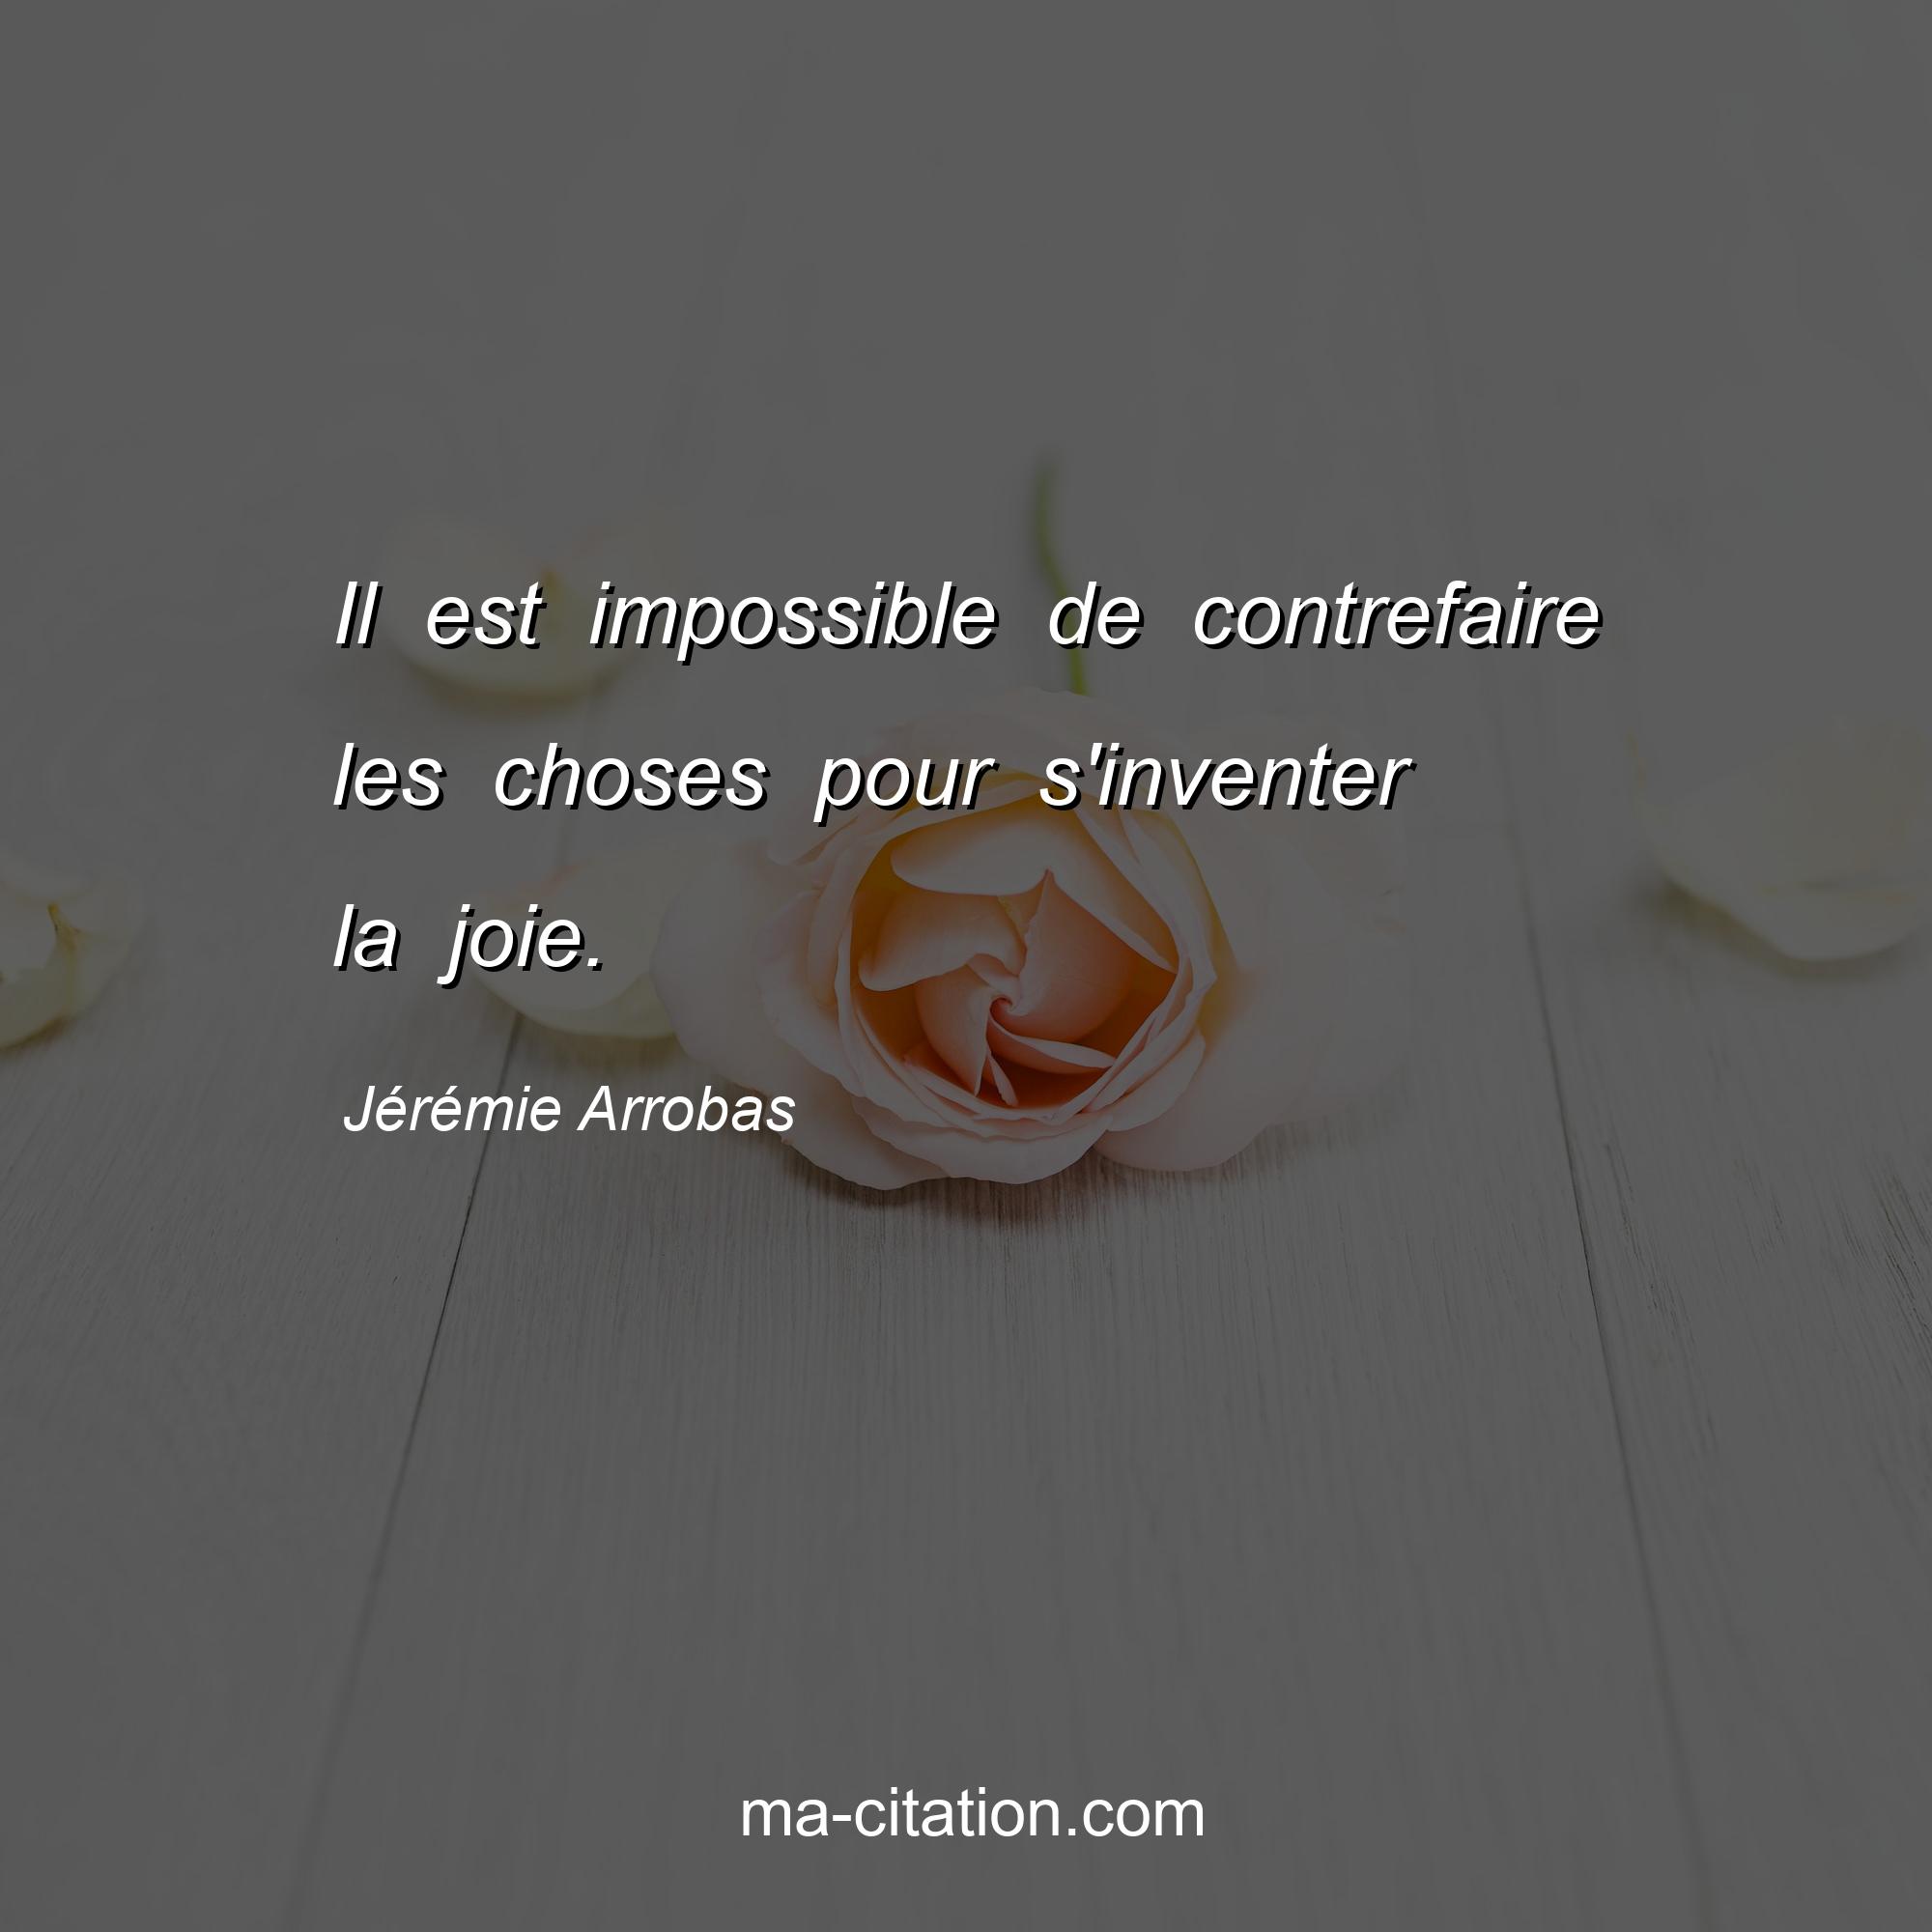 Jérémie Arrobas : Il est impossible de contrefaire les choses pour s'inventer la joie.